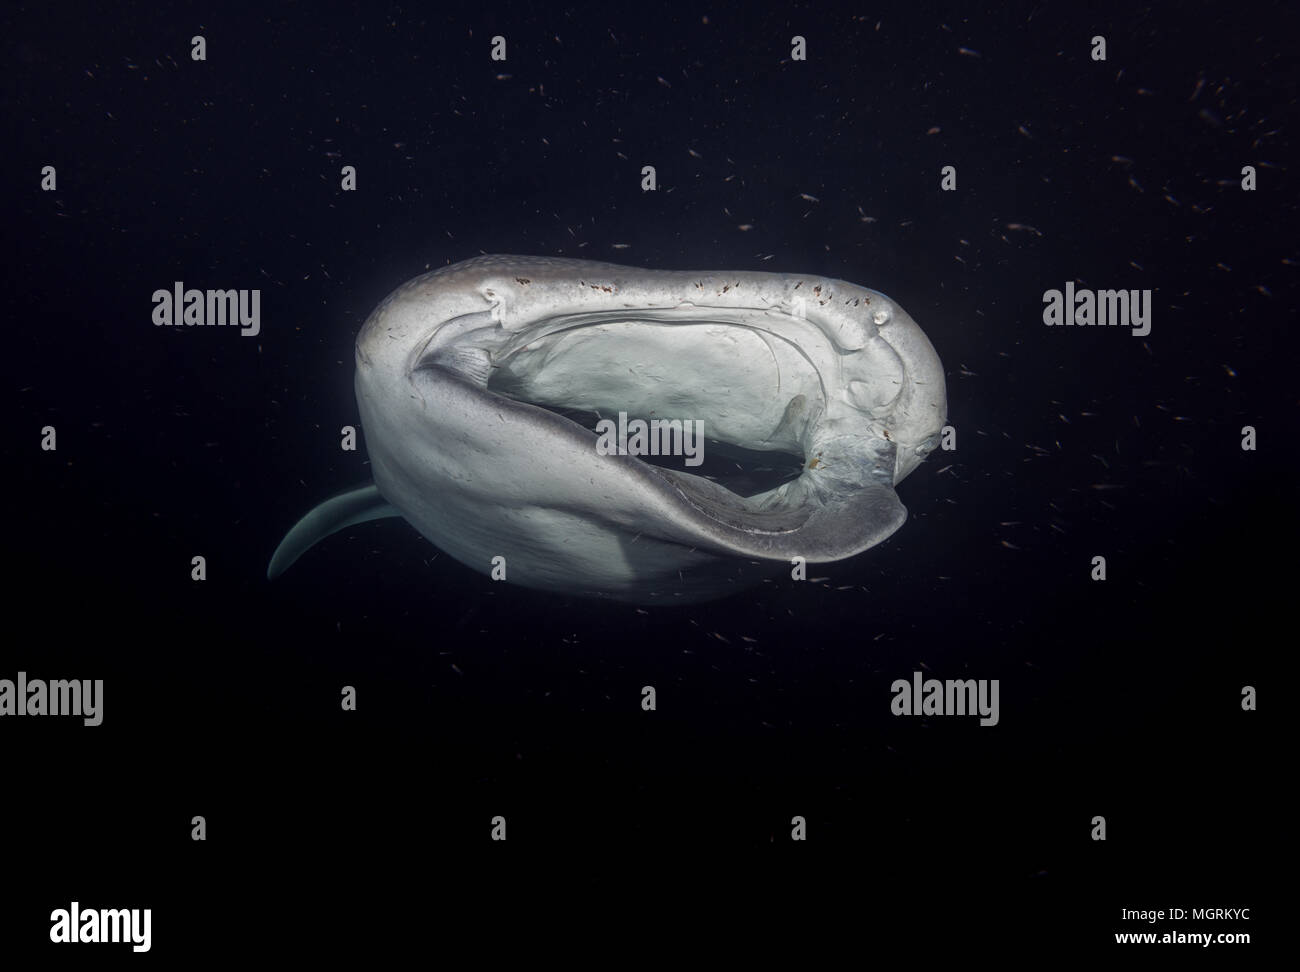 Portrait der Walhai (Firma IPCON typus) mit schweren Verletzungen Filter - Fütterung Plankton in der Nacht Stockfoto